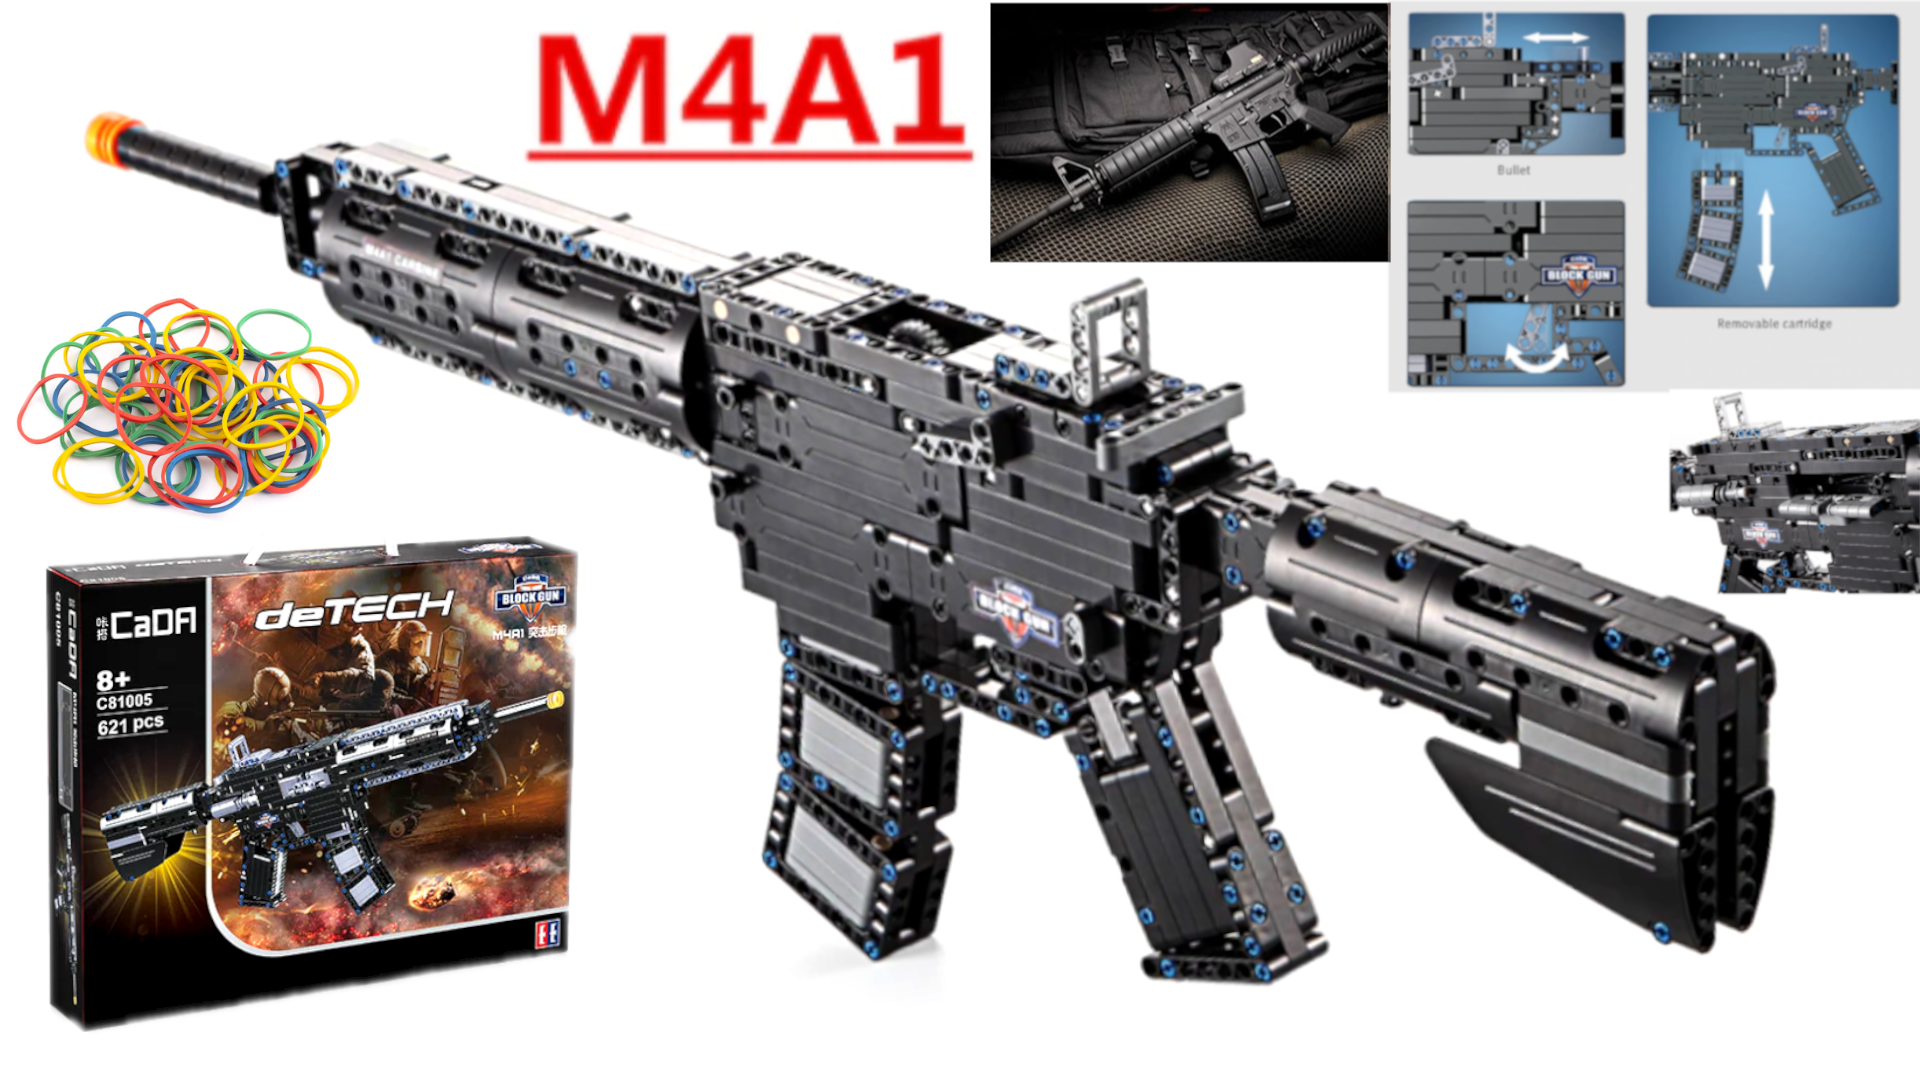 Klocki CADA Karabin M4A1, Pistolet Nerf, Klocki Lego Technic, TOMDORIX